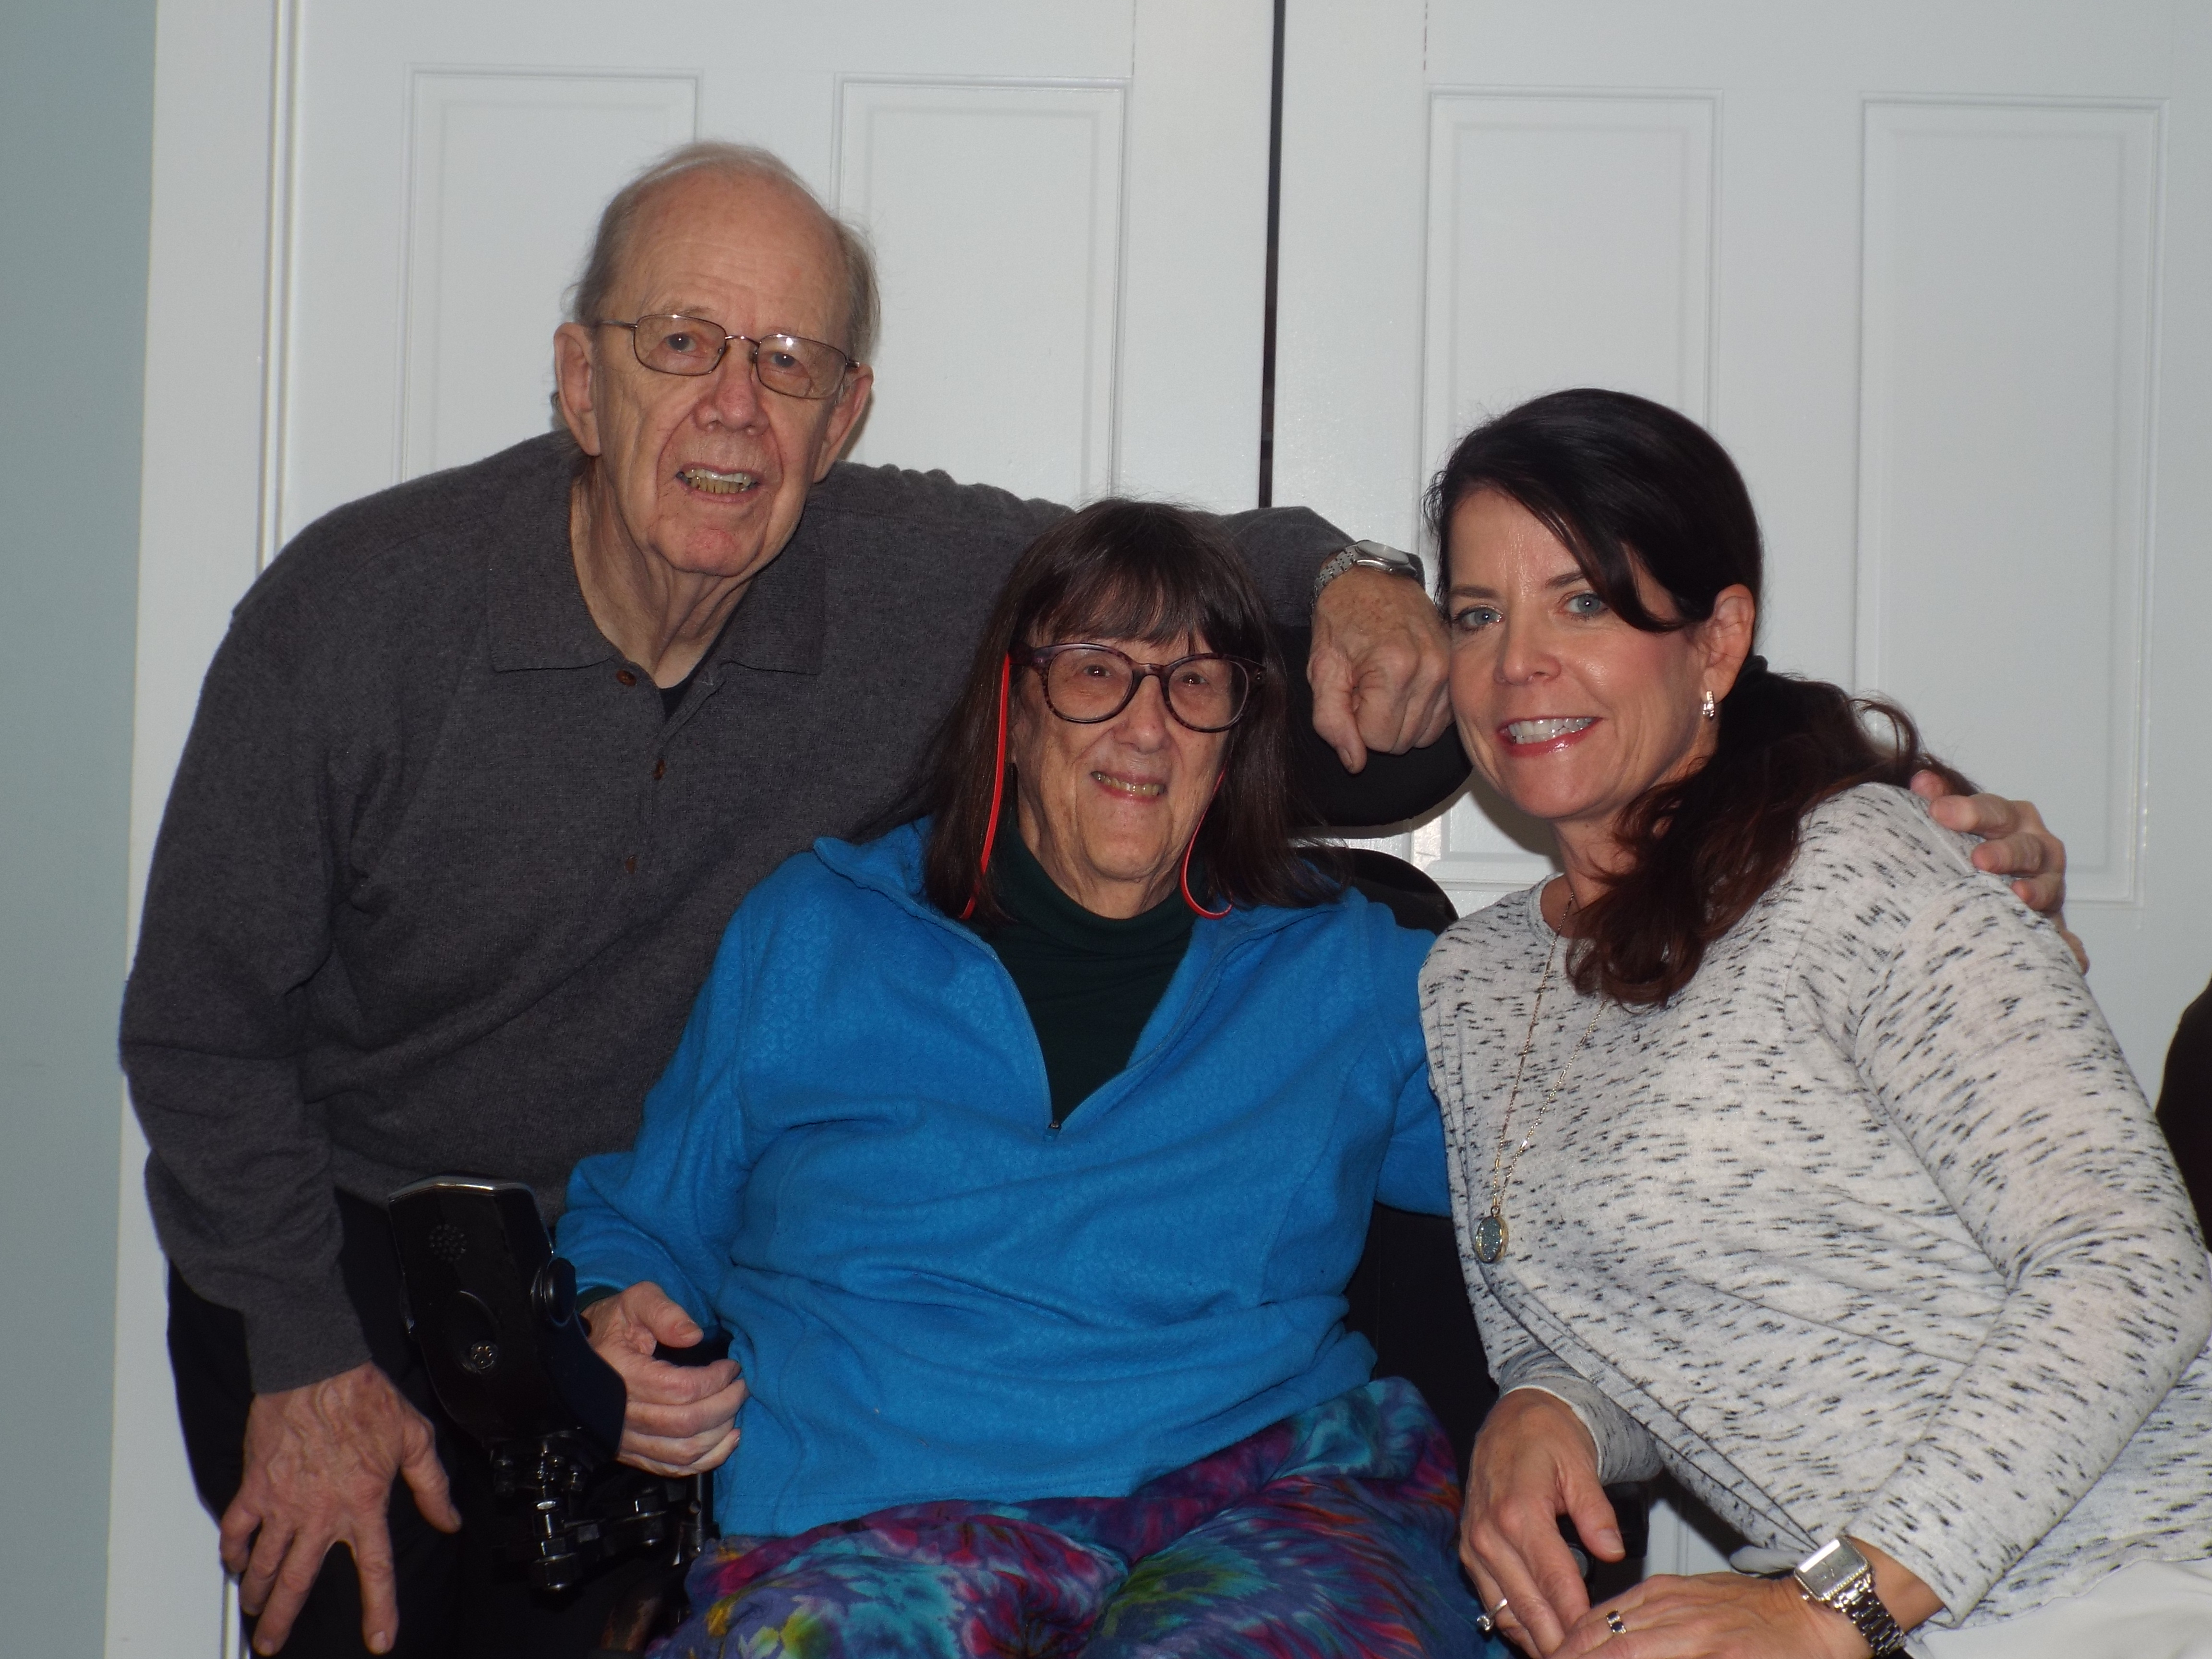 Frank and Kathie, grateful patients